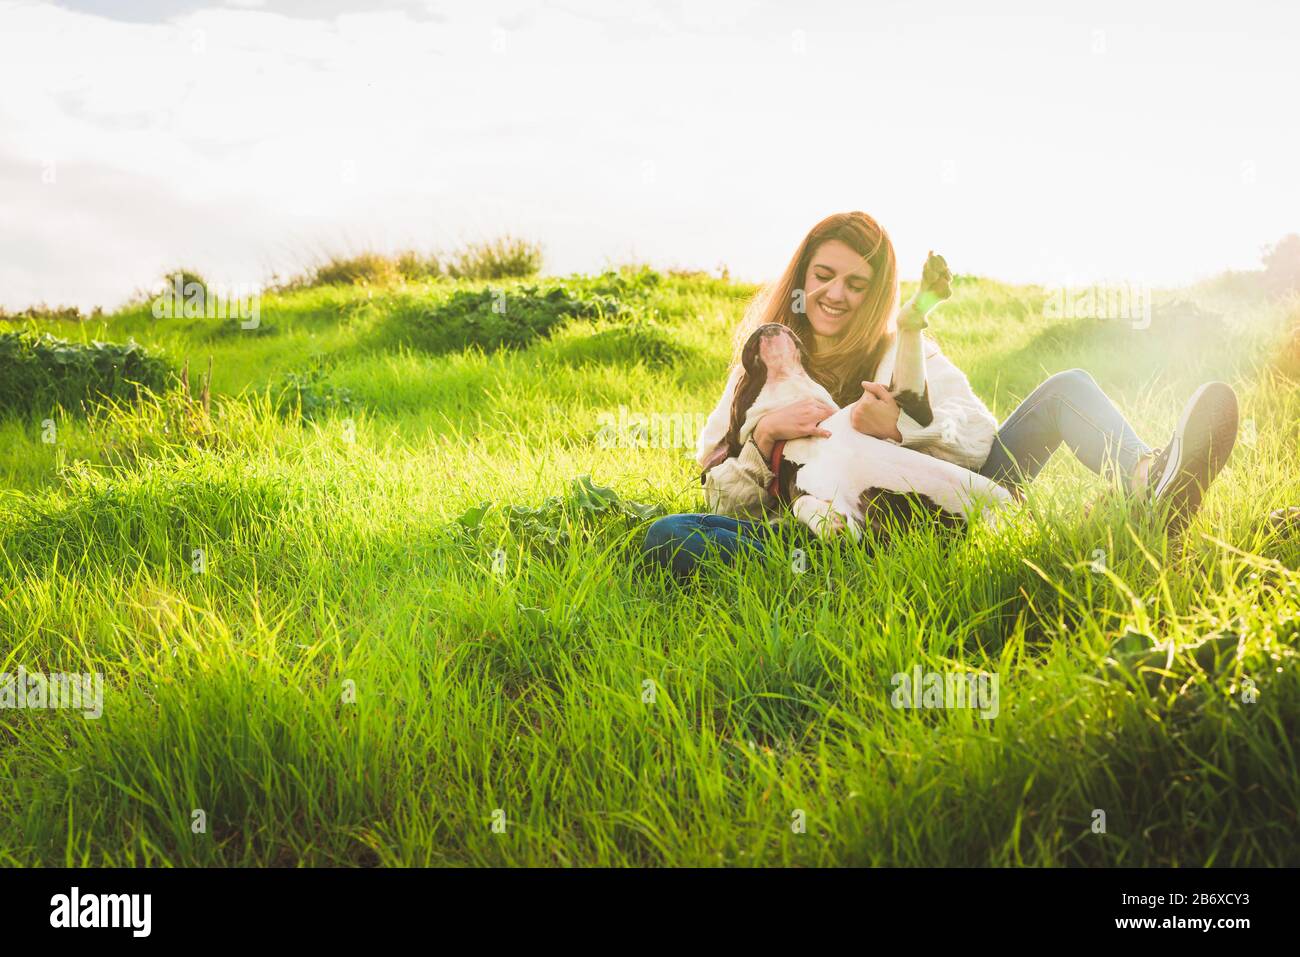 Giovane donna con maglia bianca e jeans che giocano con il terrier americano Staffordshire nel campo Foto Stock